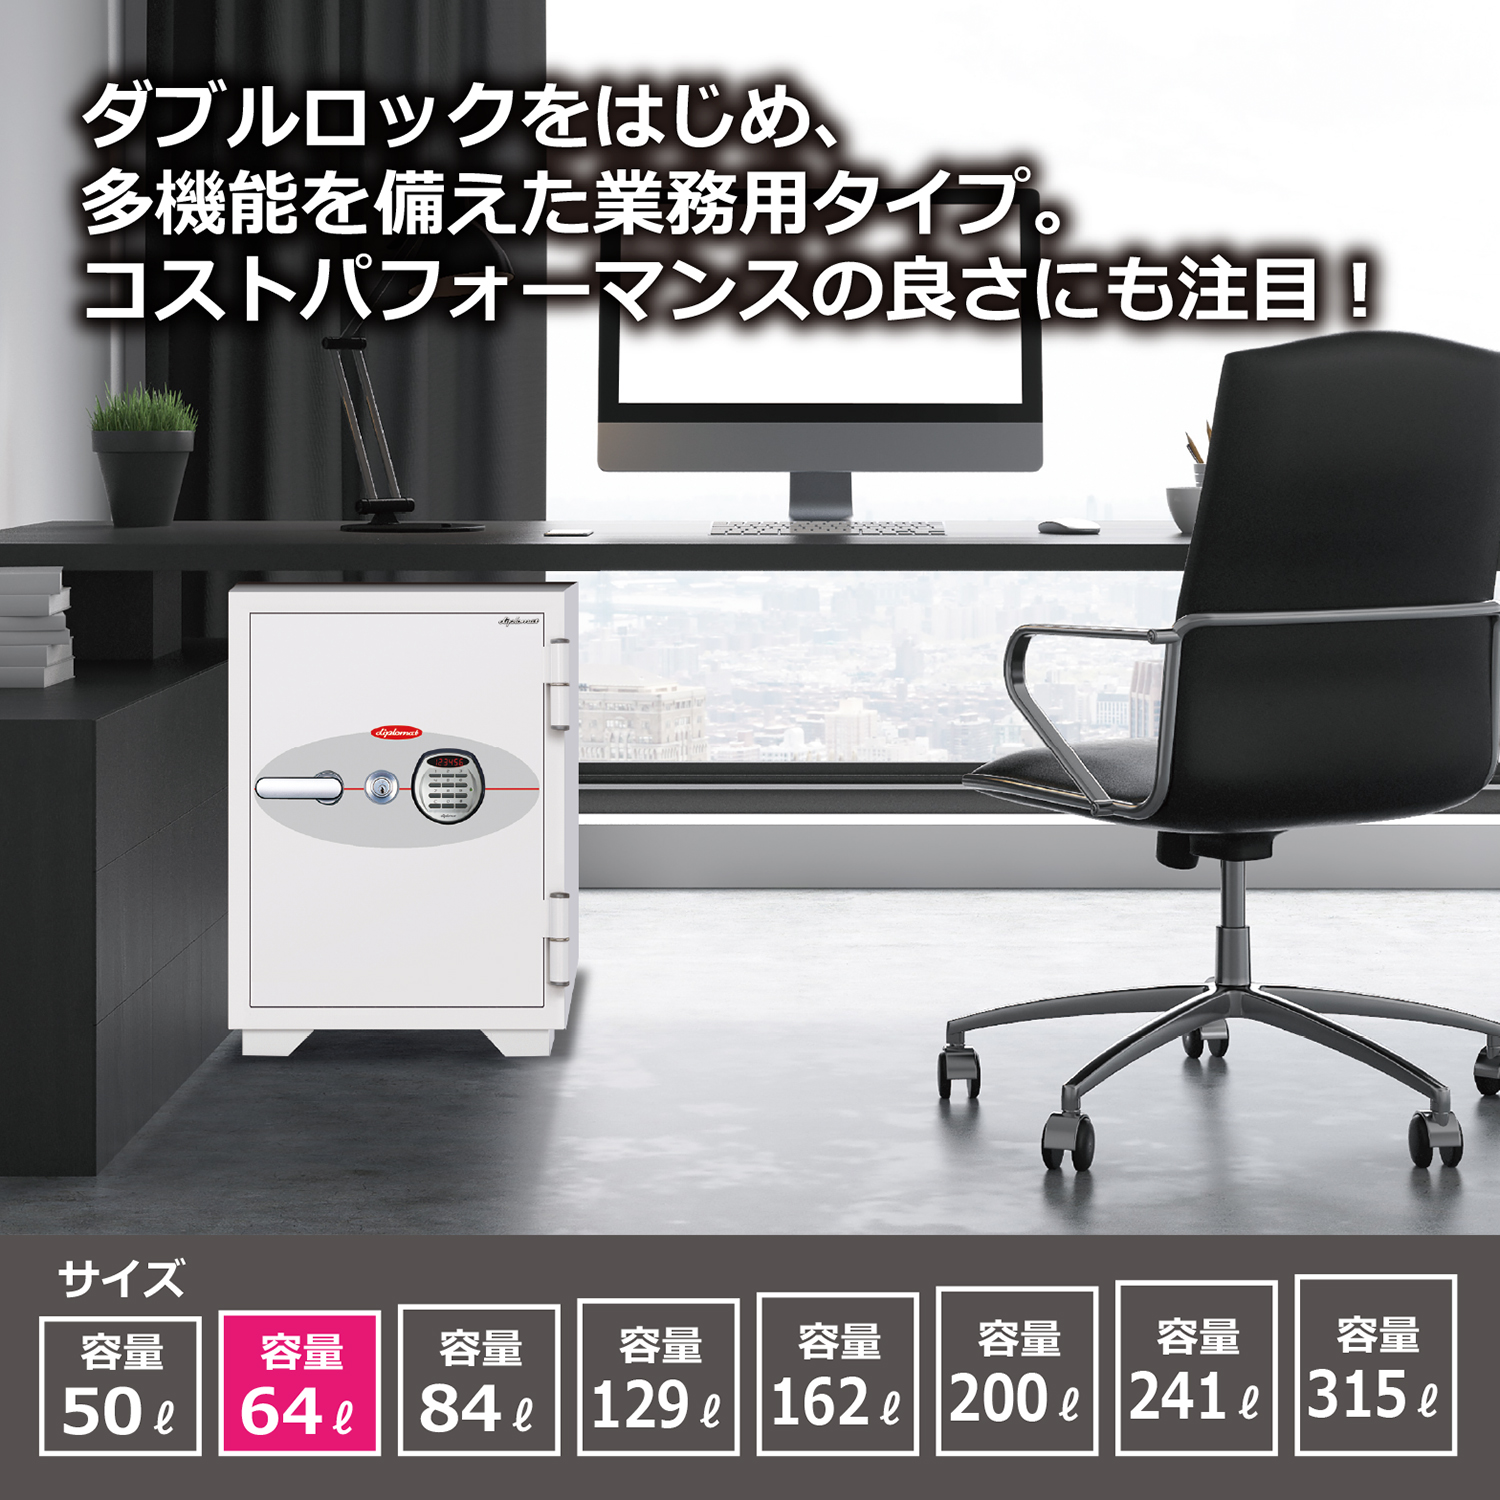 ダブルロック式 オフィス用耐火金庫 64L（W500×D540×H695）